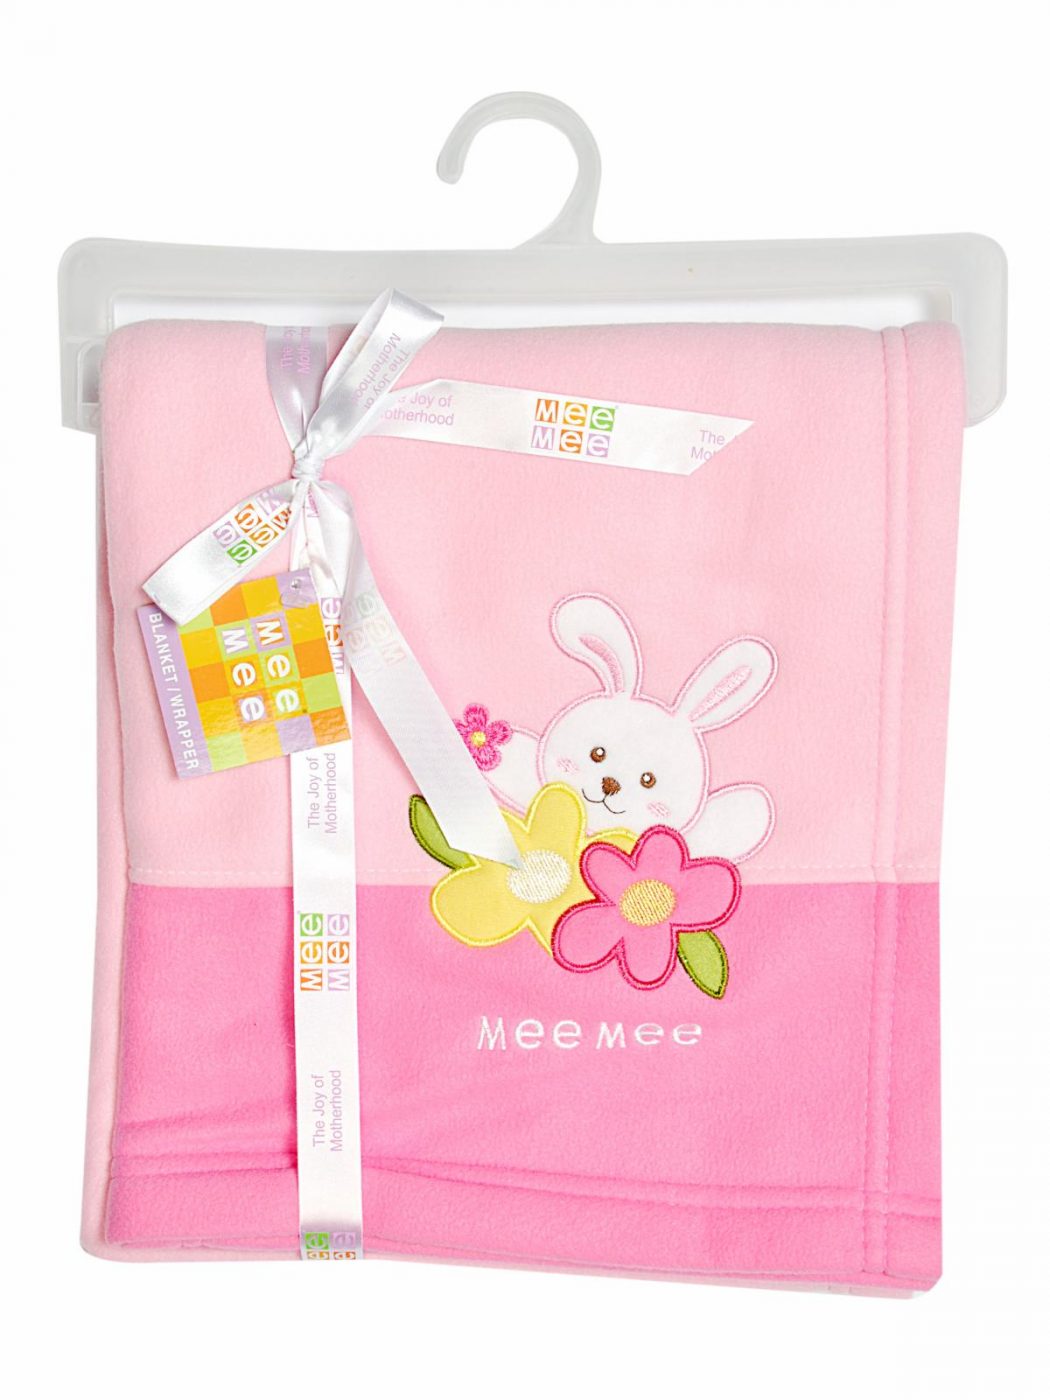 mee-mee-baby-blanket Best 25 Baby Shower Gifts